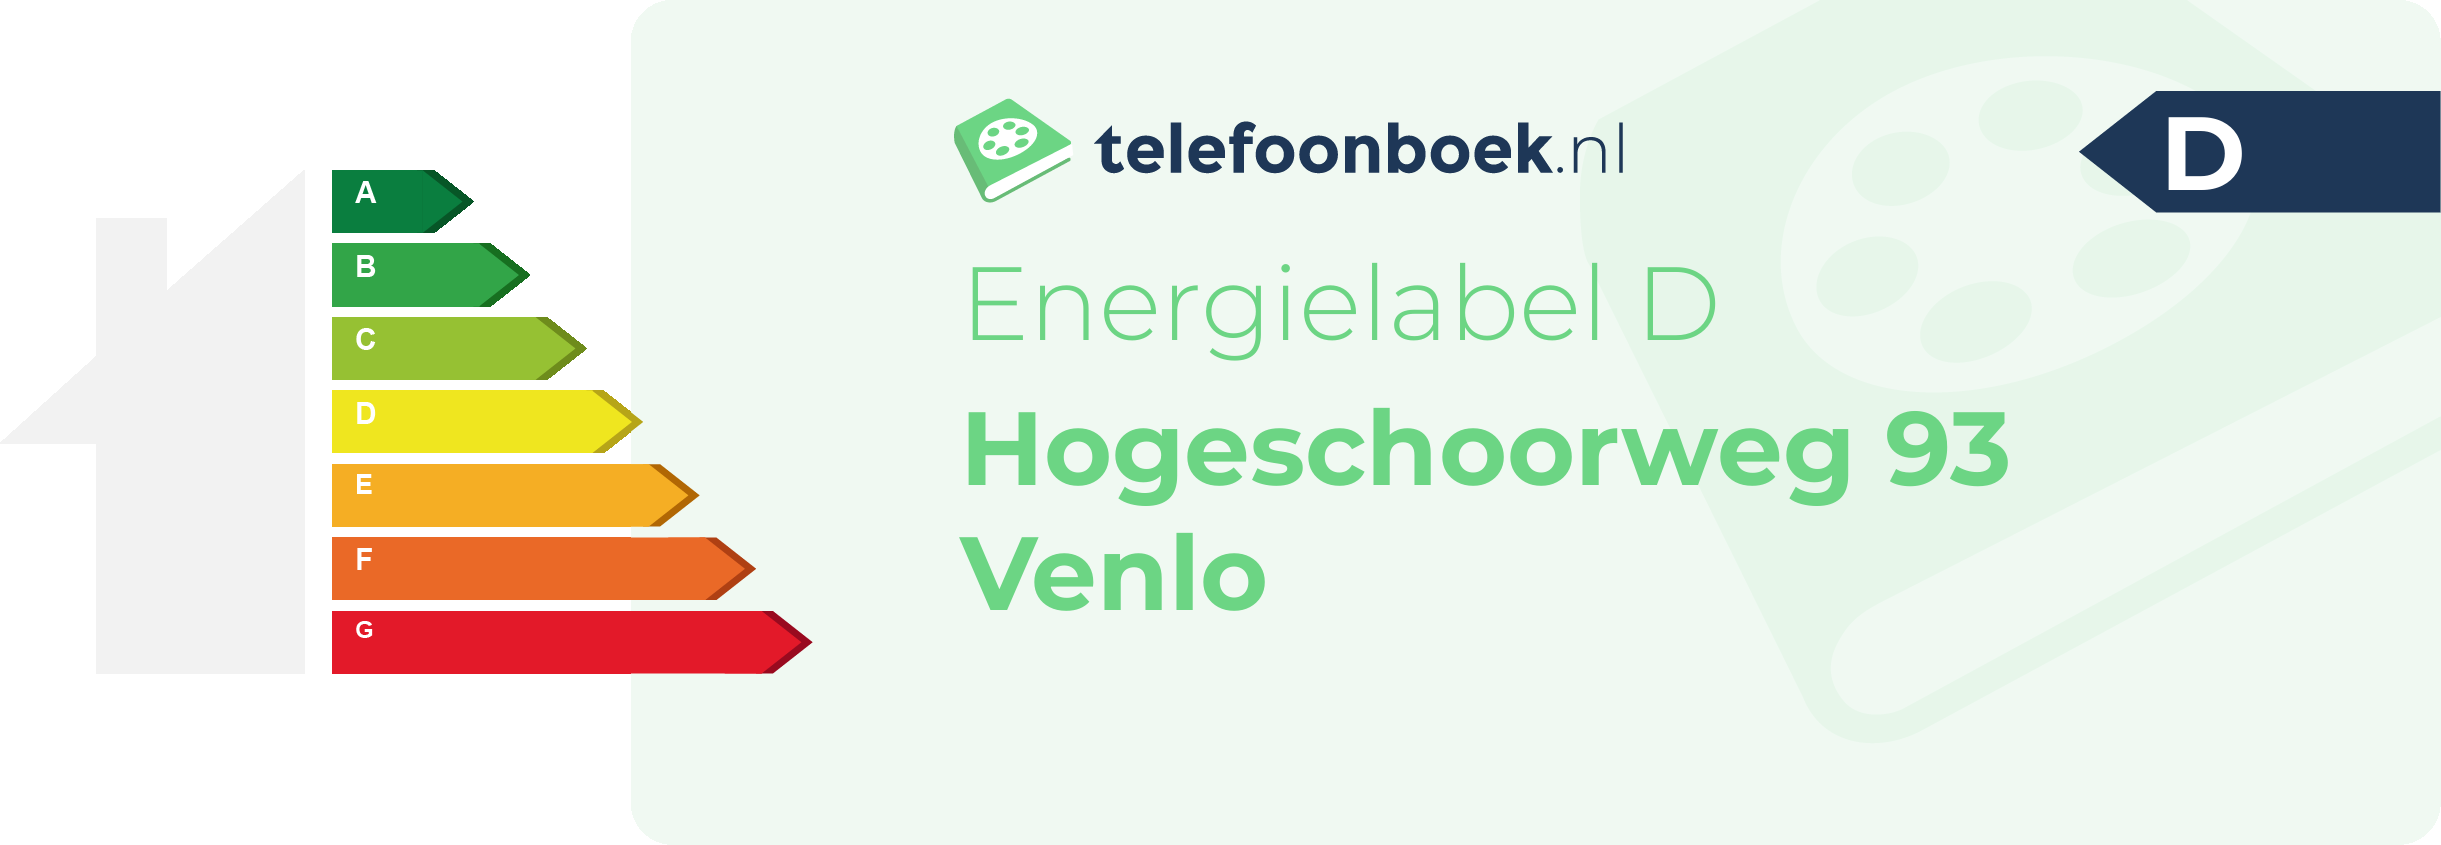 Energielabel Hogeschoorweg 93 Venlo